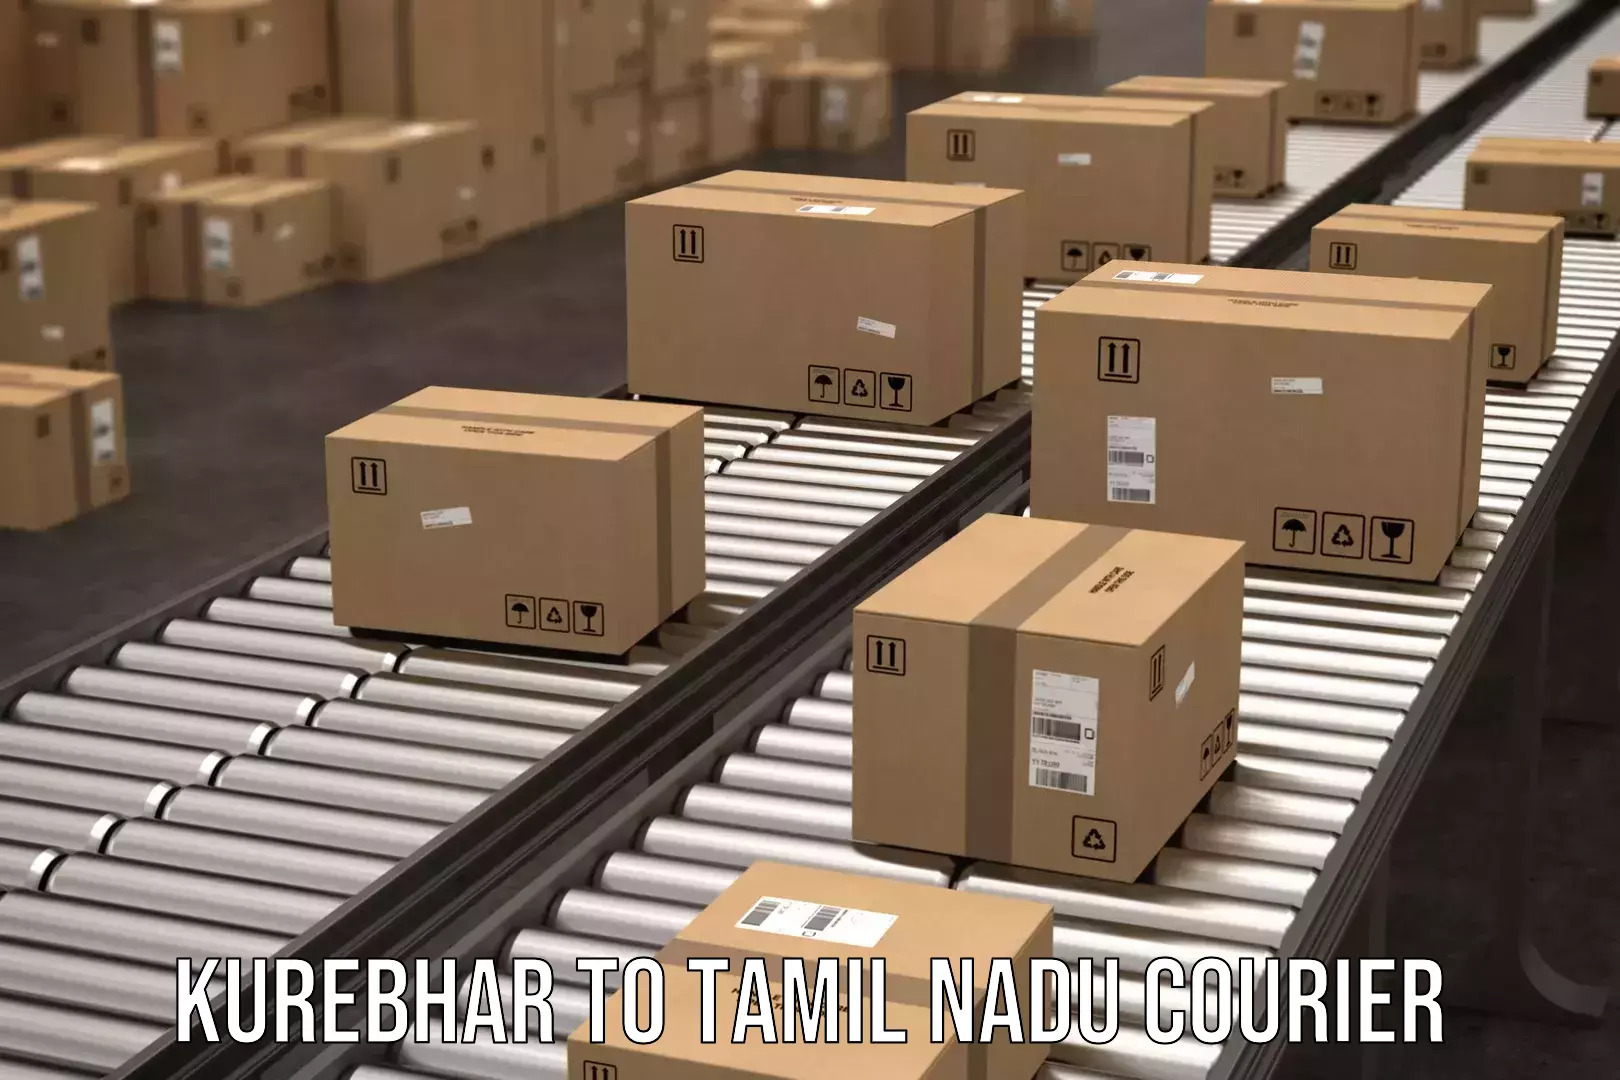 Cash on delivery service Kurebhar to Tamil Nadu